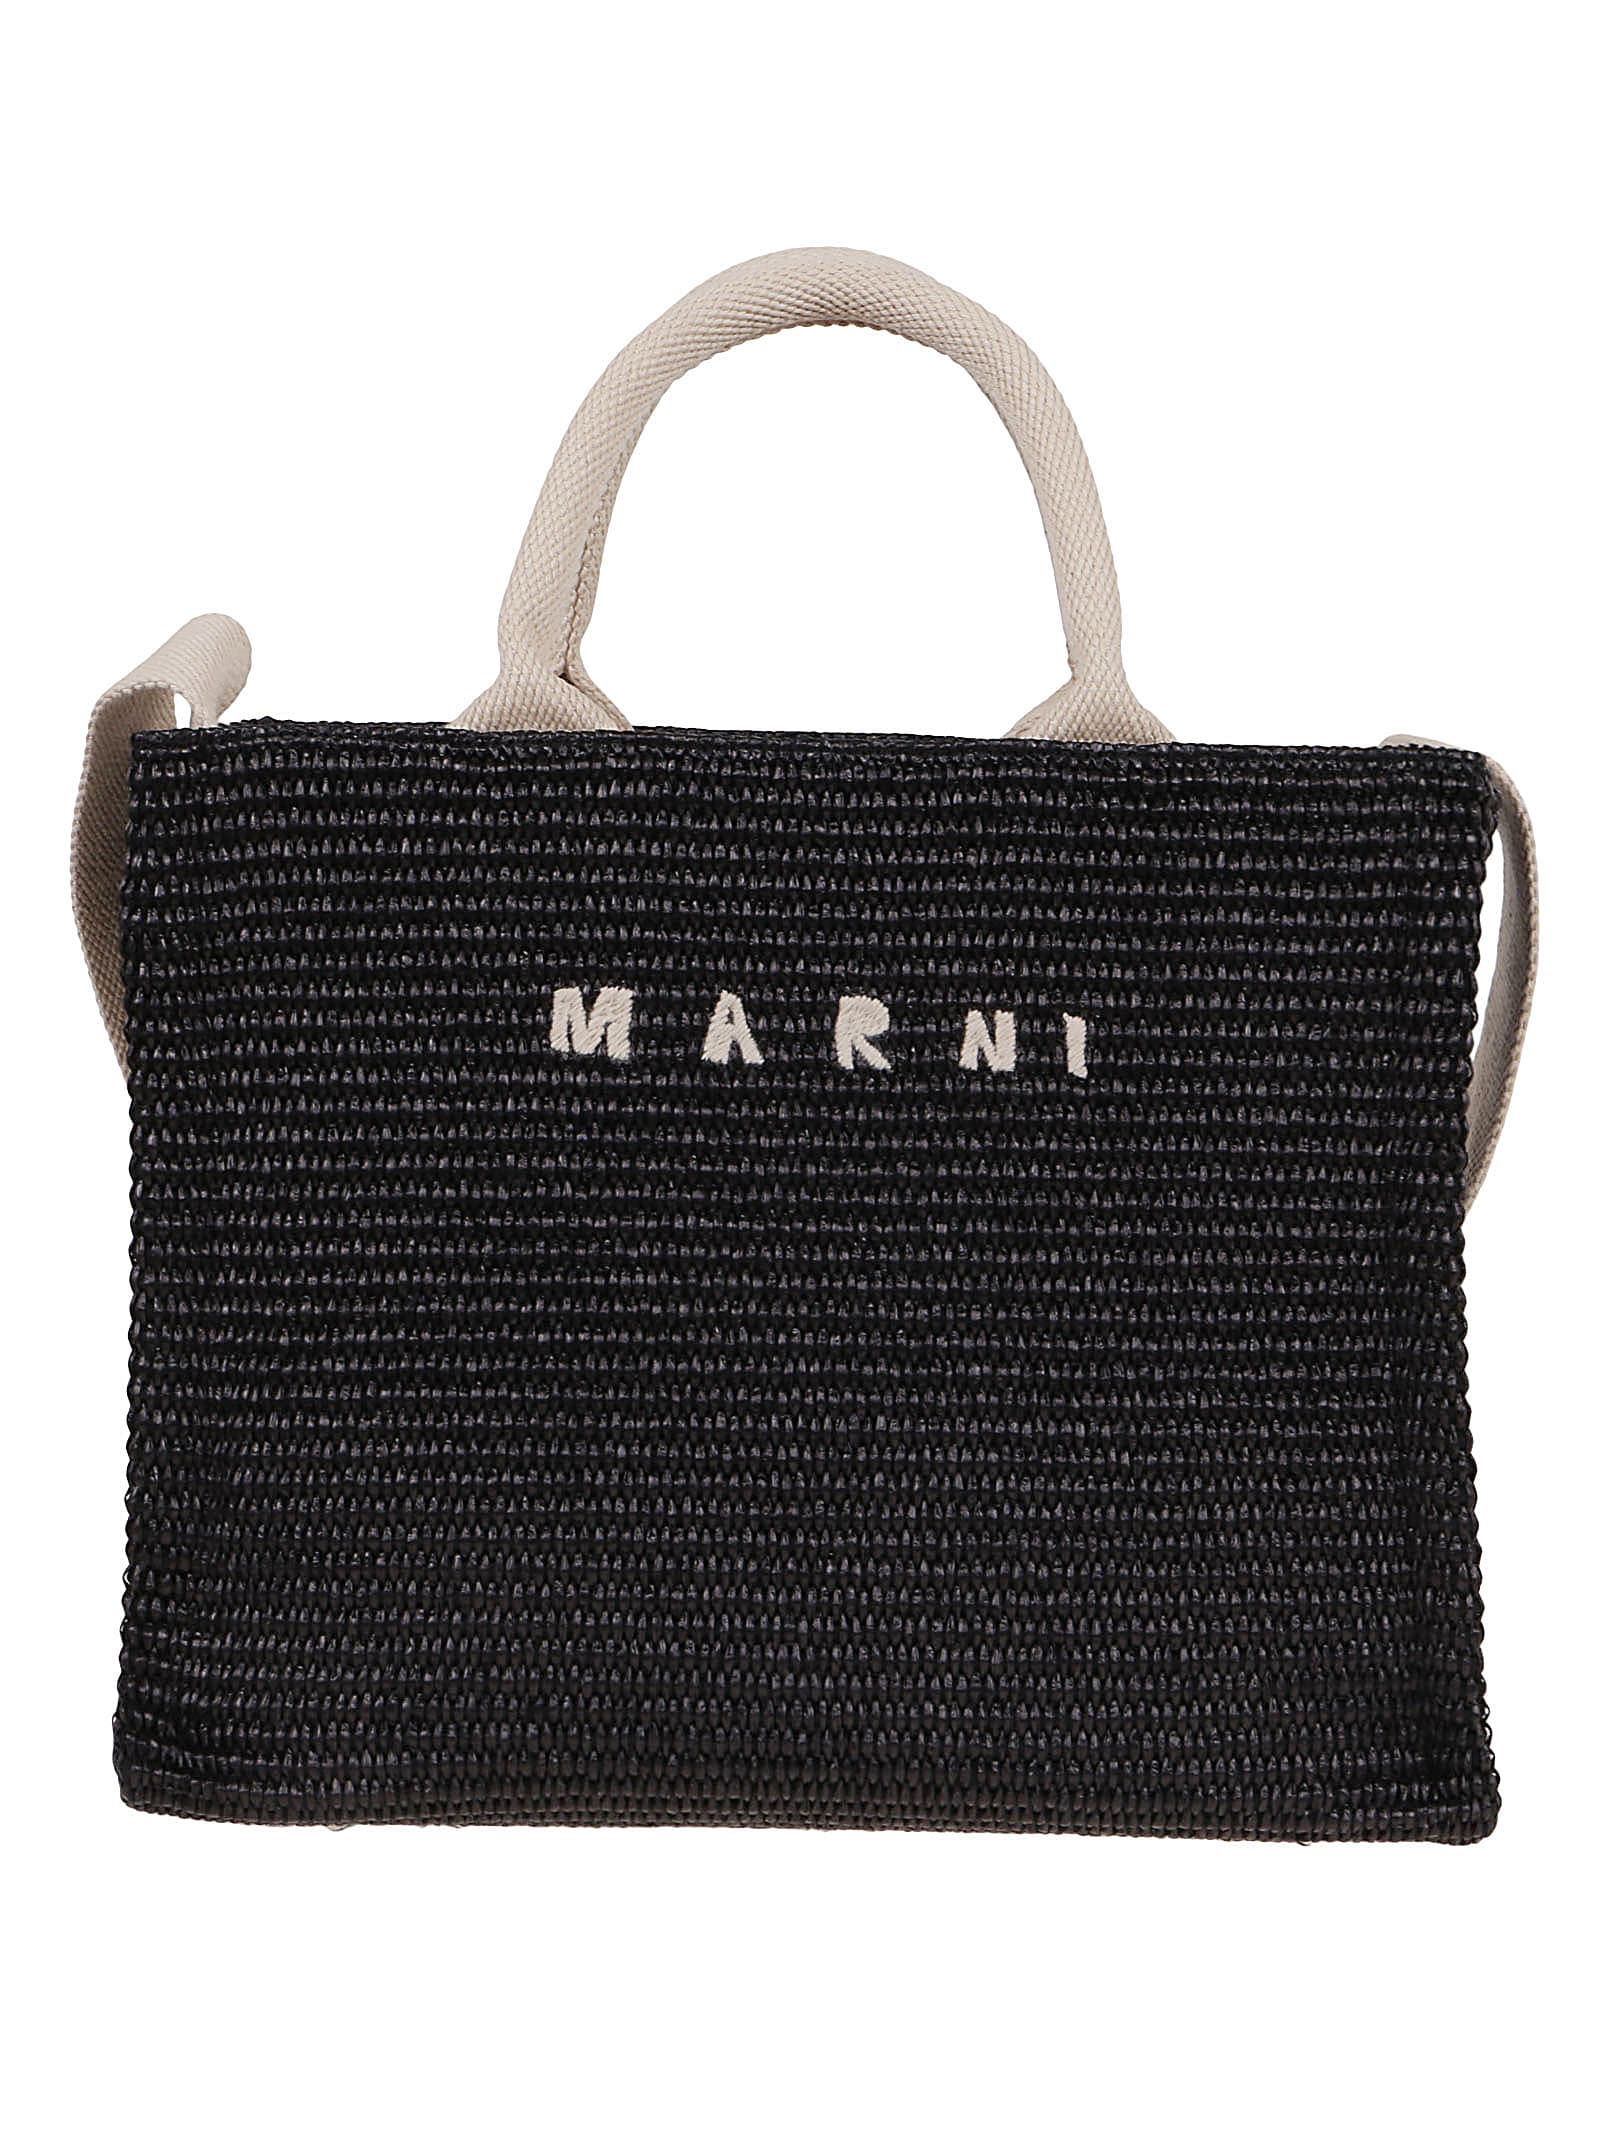 Marni Small Basket In Nero